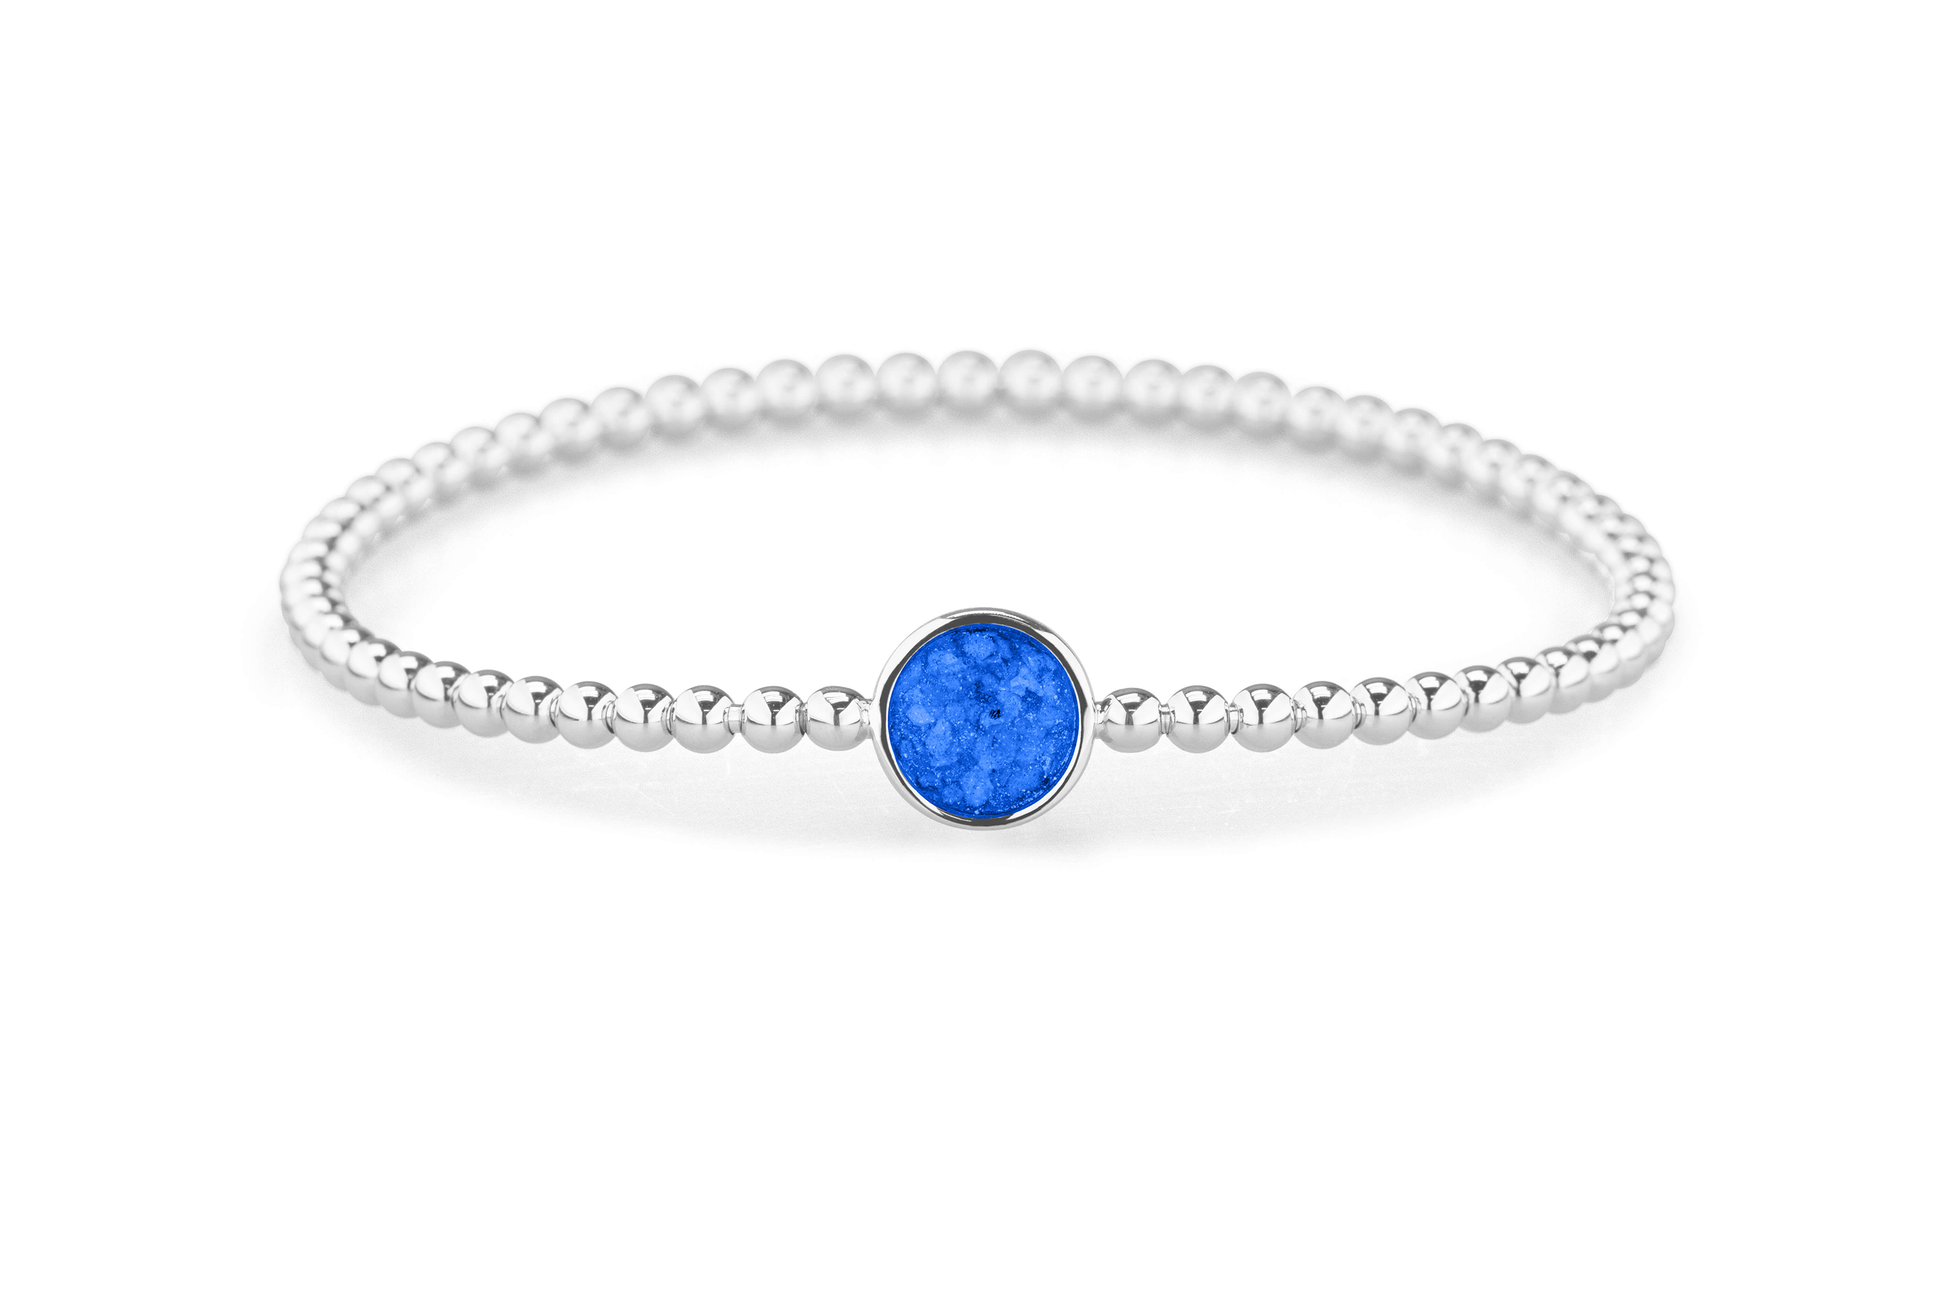 Flexibele as armband met rondje als compartiment voor as of haar, gedenksieraden. Blue